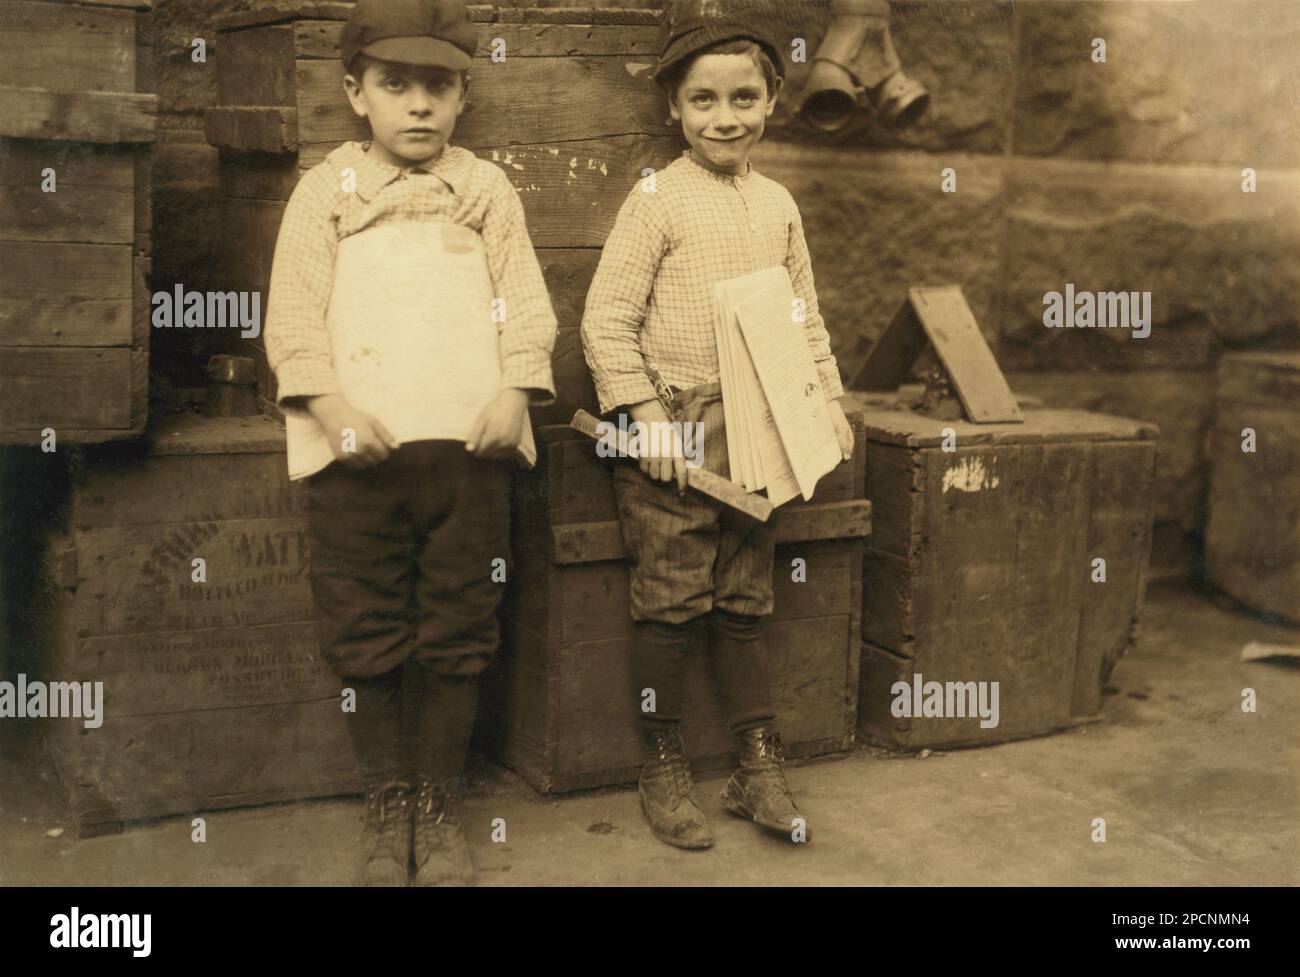 1913 , dicembre, NEW ORLEANS, Louisiana, USA : due dei newsboys più giovani che potessi trovare a New Orleans. Sette e nove anni. Sono rari i ragazzi di LEWIS HINE ( 1874 - 1940 ) - BAMBINI -- LAVORI - BAMBINO - OPERAI BAMBINI - FABBRICA - INFANZIA - INFANZIA - LAVORO MINORILE - LAVORO - LAVORO - LAVORATORE - OPERAIO - CLASSE OPERAIA LAVORATRICE - WORKING CLASS - OPERAI - LAVORATORI - LAVORO - STATI UNITI D'AMERICA - FOTO STORICHE - STORIA - RITRATTO - RITRATTO - TEMPI MODERNI - MODERN TIMES - CAPPELLO - CAPPELLO - TURNO DI LAVORO - GIORNALAIO - GIORN Foto Stock